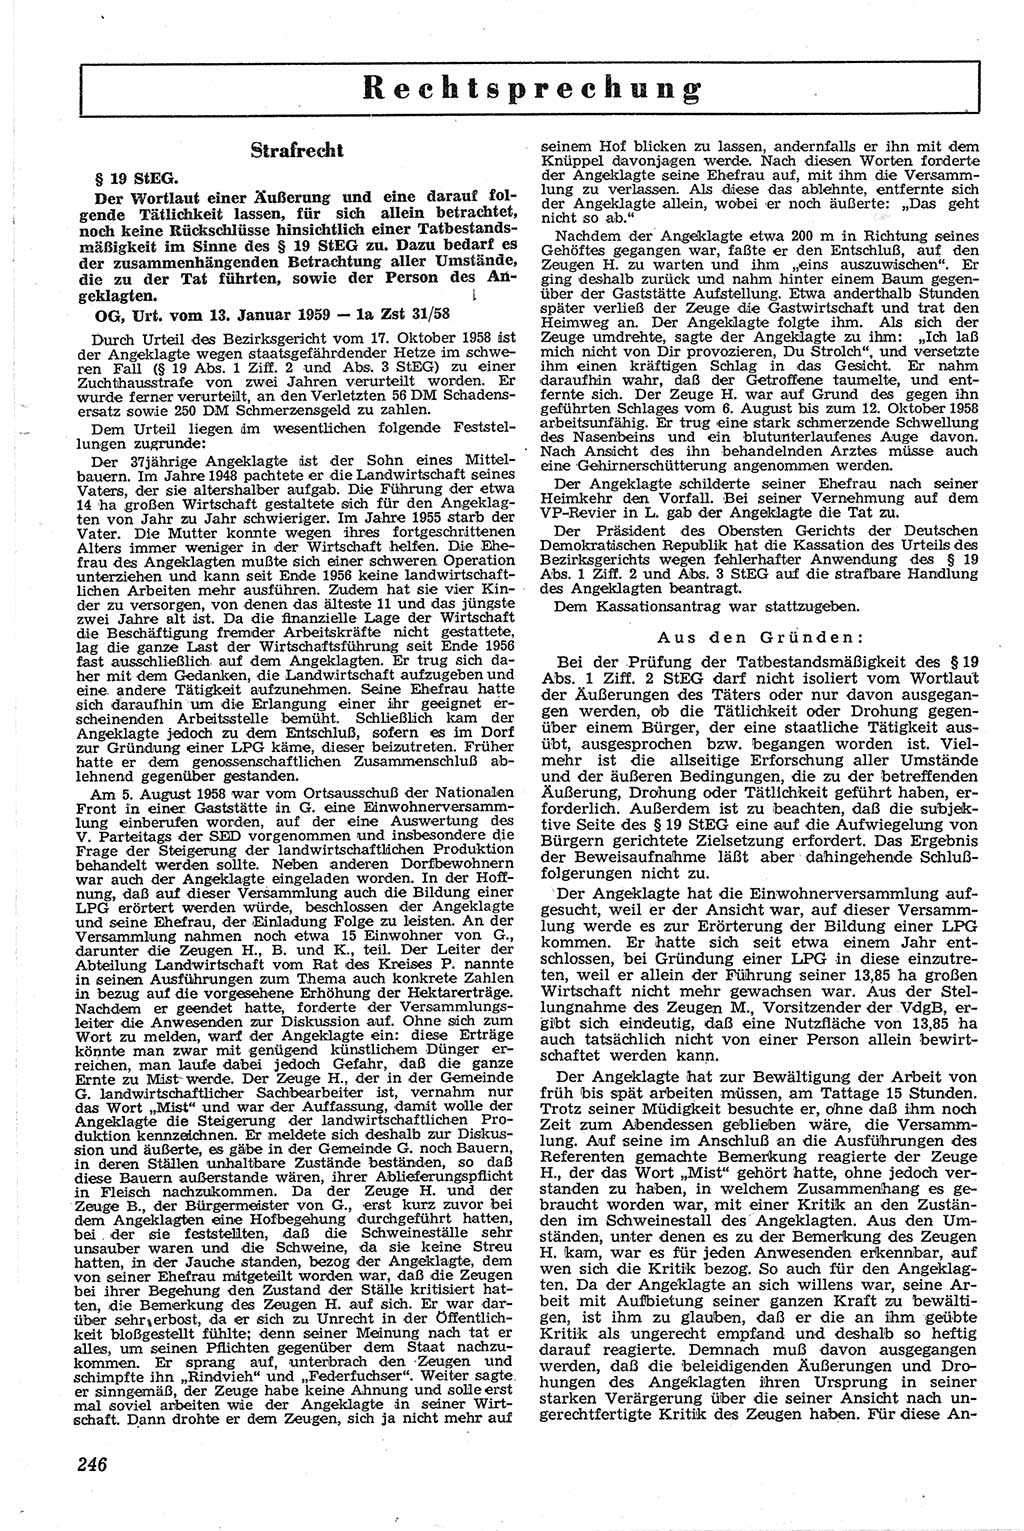 Neue Justiz (NJ), Zeitschrift für Recht und Rechtswissenschaft [Deutsche Demokratische Republik (DDR)], 13. Jahrgang 1959, Seite 246 (NJ DDR 1959, S. 246)